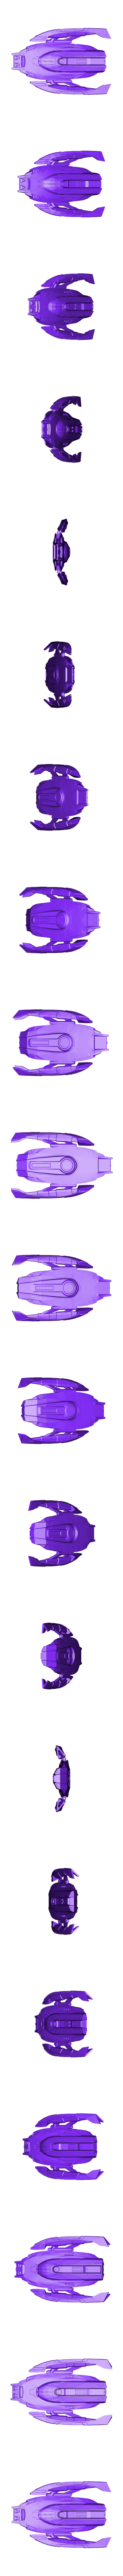 Enterprise_F_Aquarius.stl Télécharger fichier STL gratuit Star Trek Odyssey-Class Enterprise-F • Plan à imprimer en 3D, Solid_Alexei